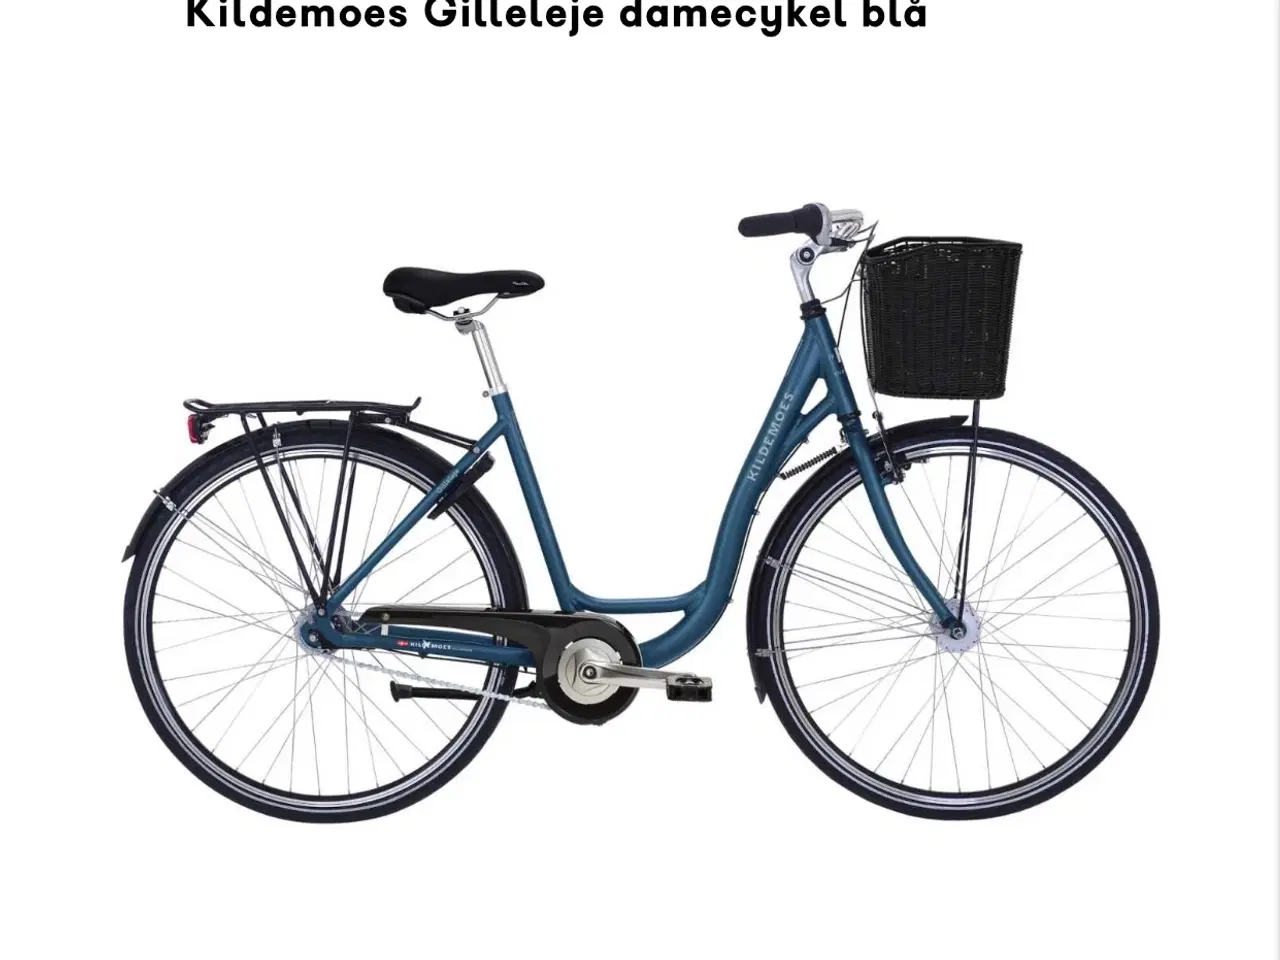 Billede 3 - Cykel, Kildemoes, næsten ny